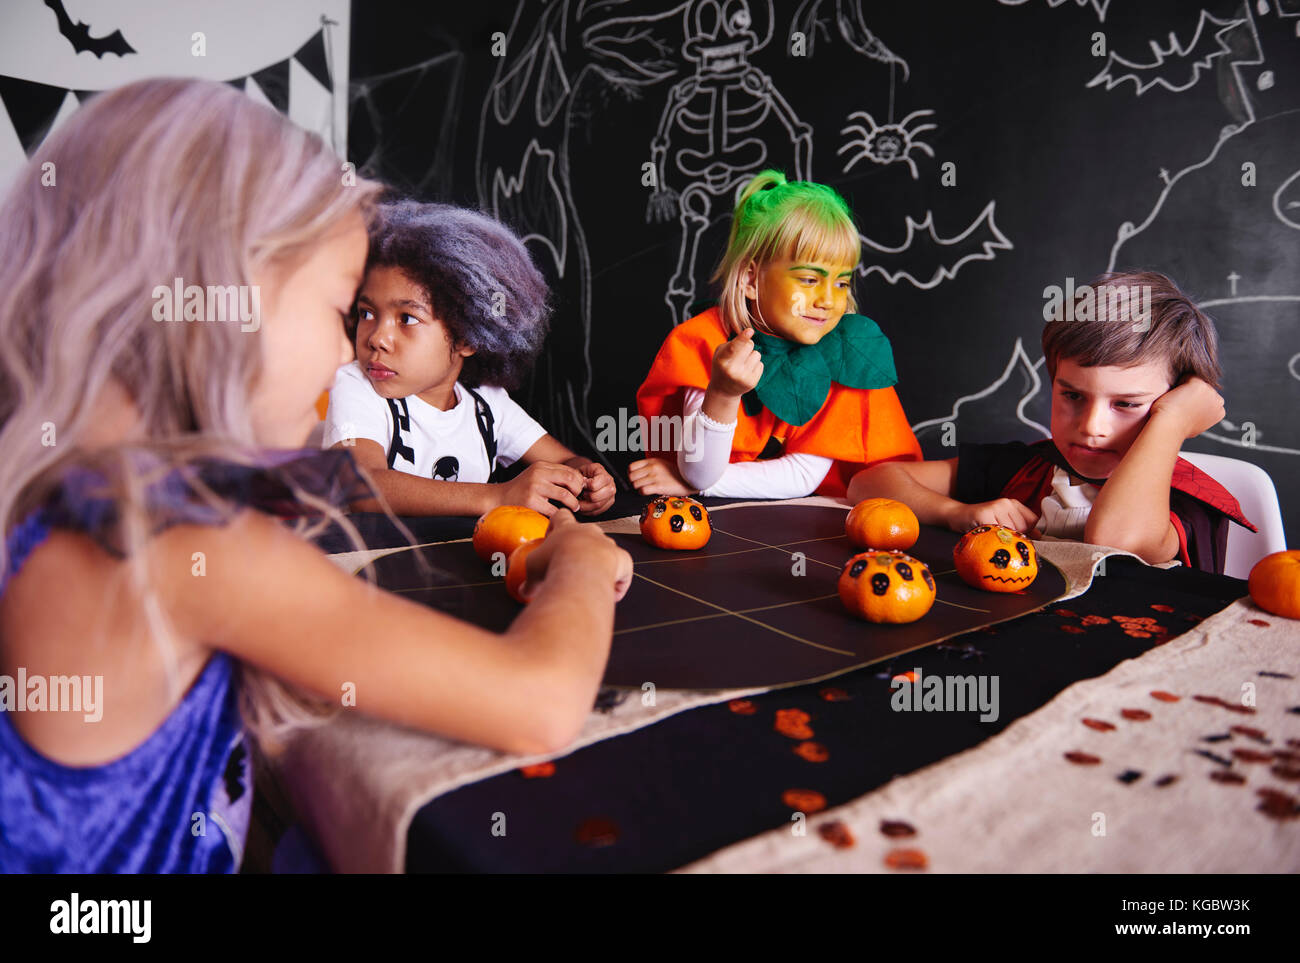 Niños jugando juegos mientras fiesta de Halloween Foto de stock